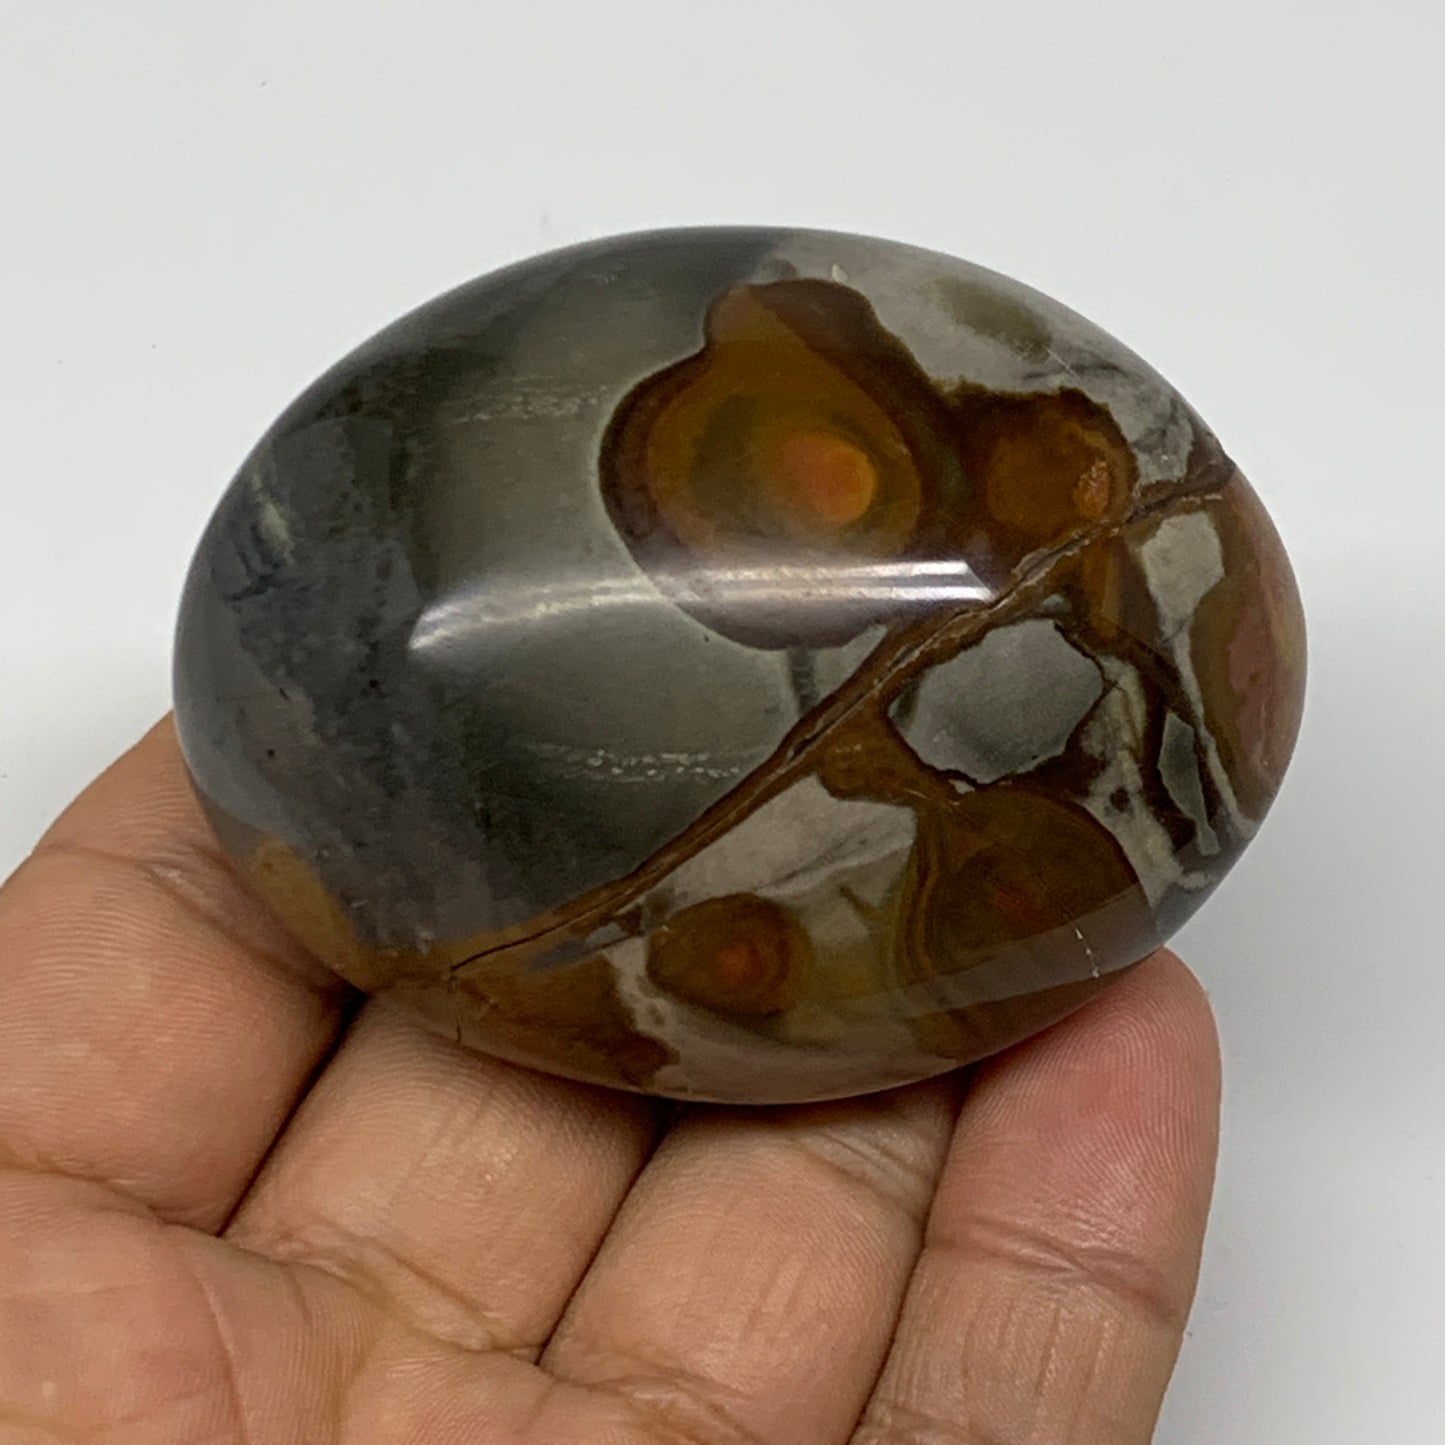 116.6g, 2.5"x1.9"x1.2" Polychrome Jasper Palm-Stone Reiki @Madagascar, B24499